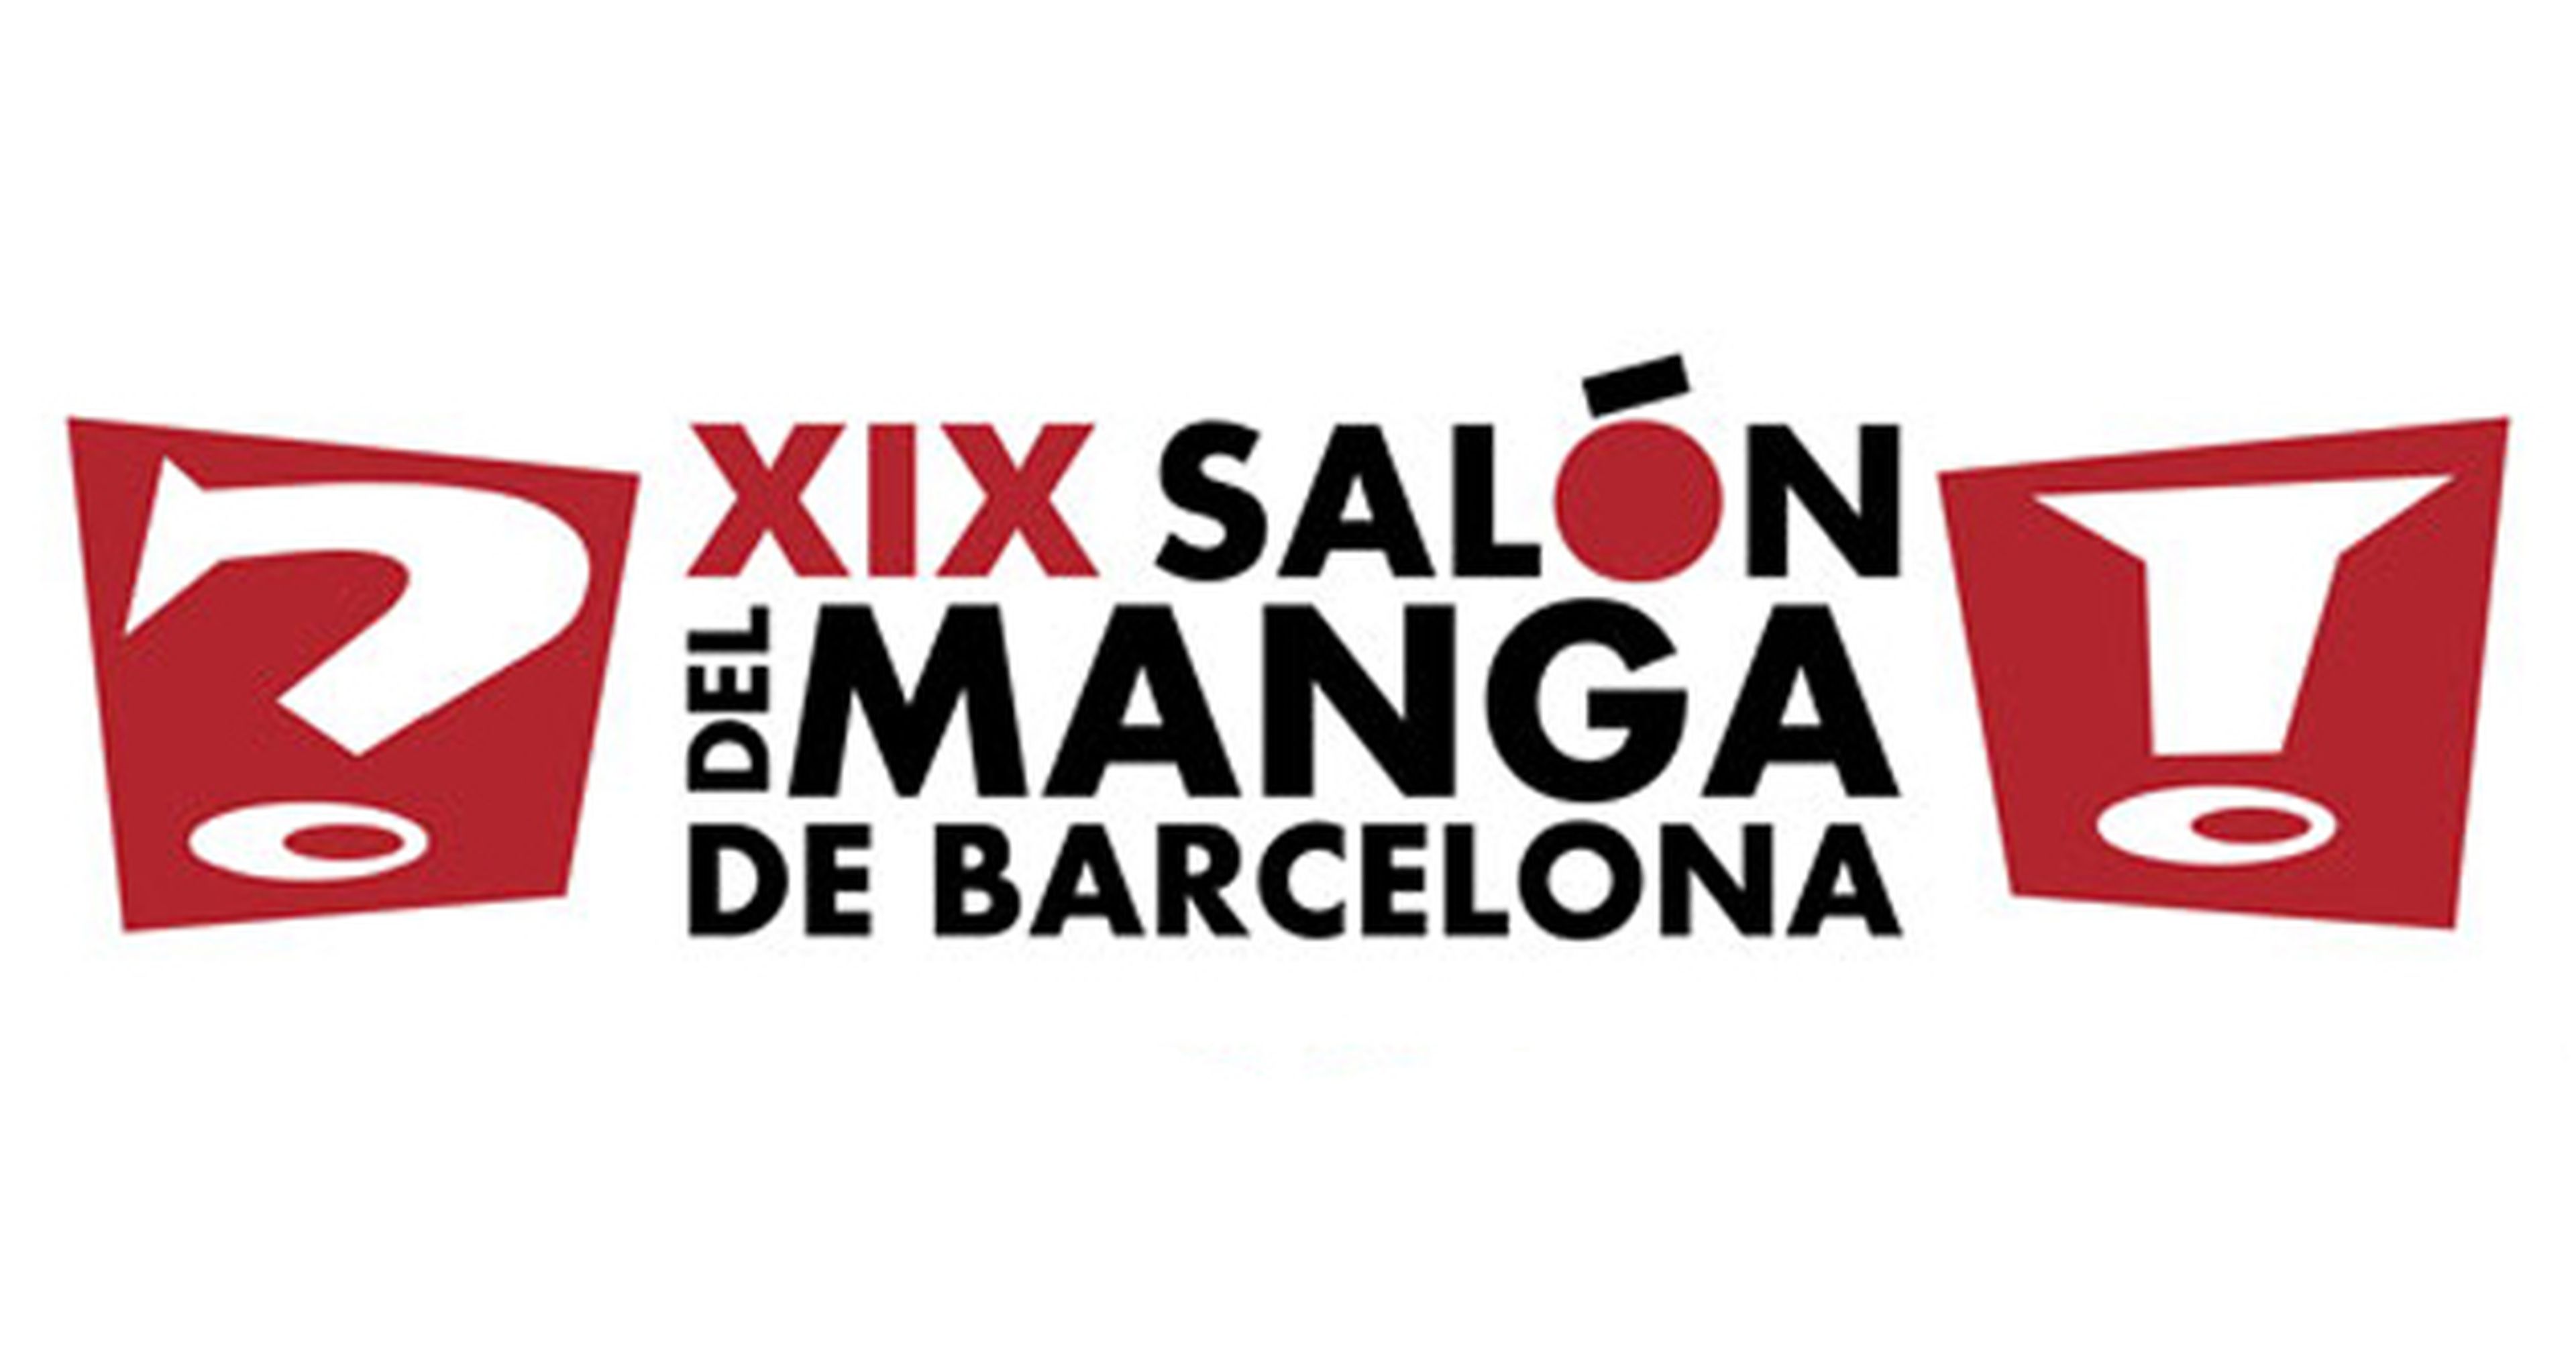 El Salón del Manga de Barcelona amplía su espacio